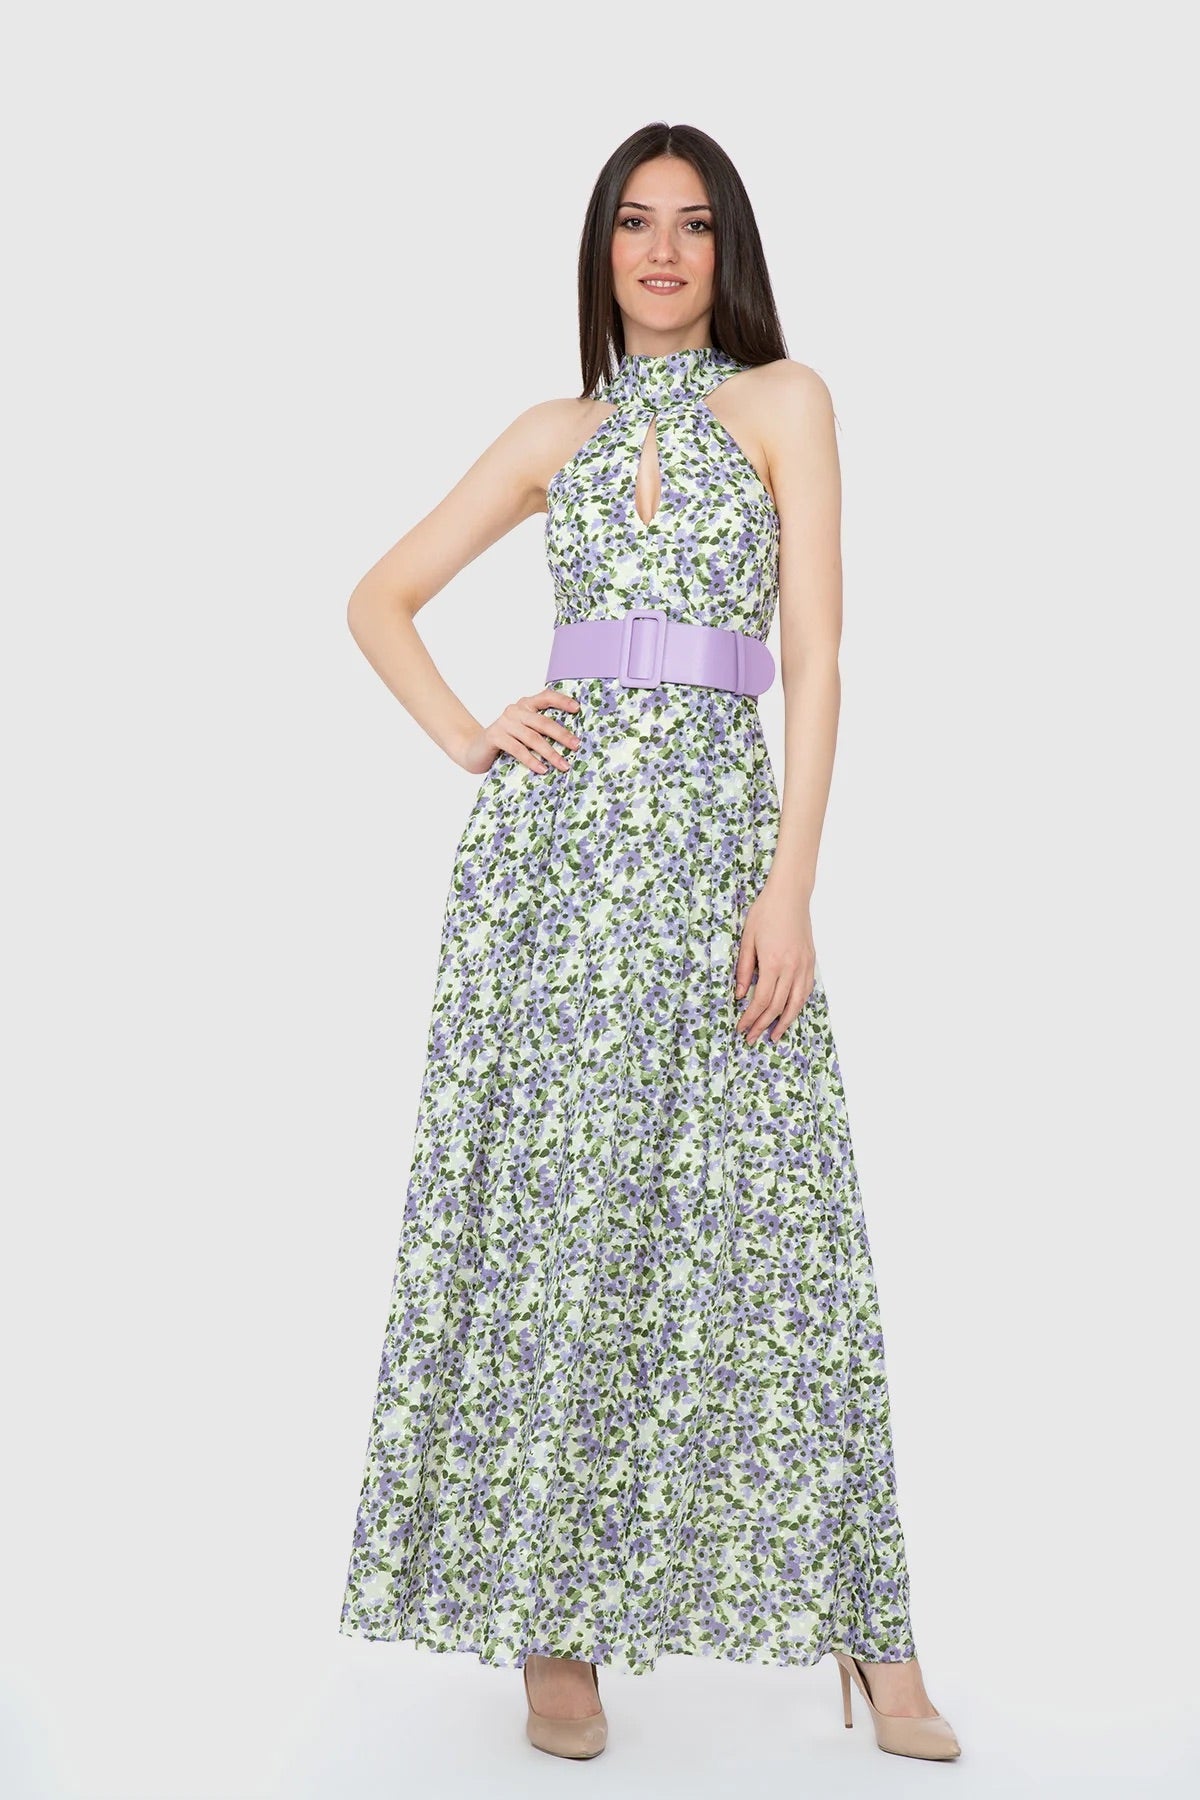 Floral Patterned Belted Long Dress